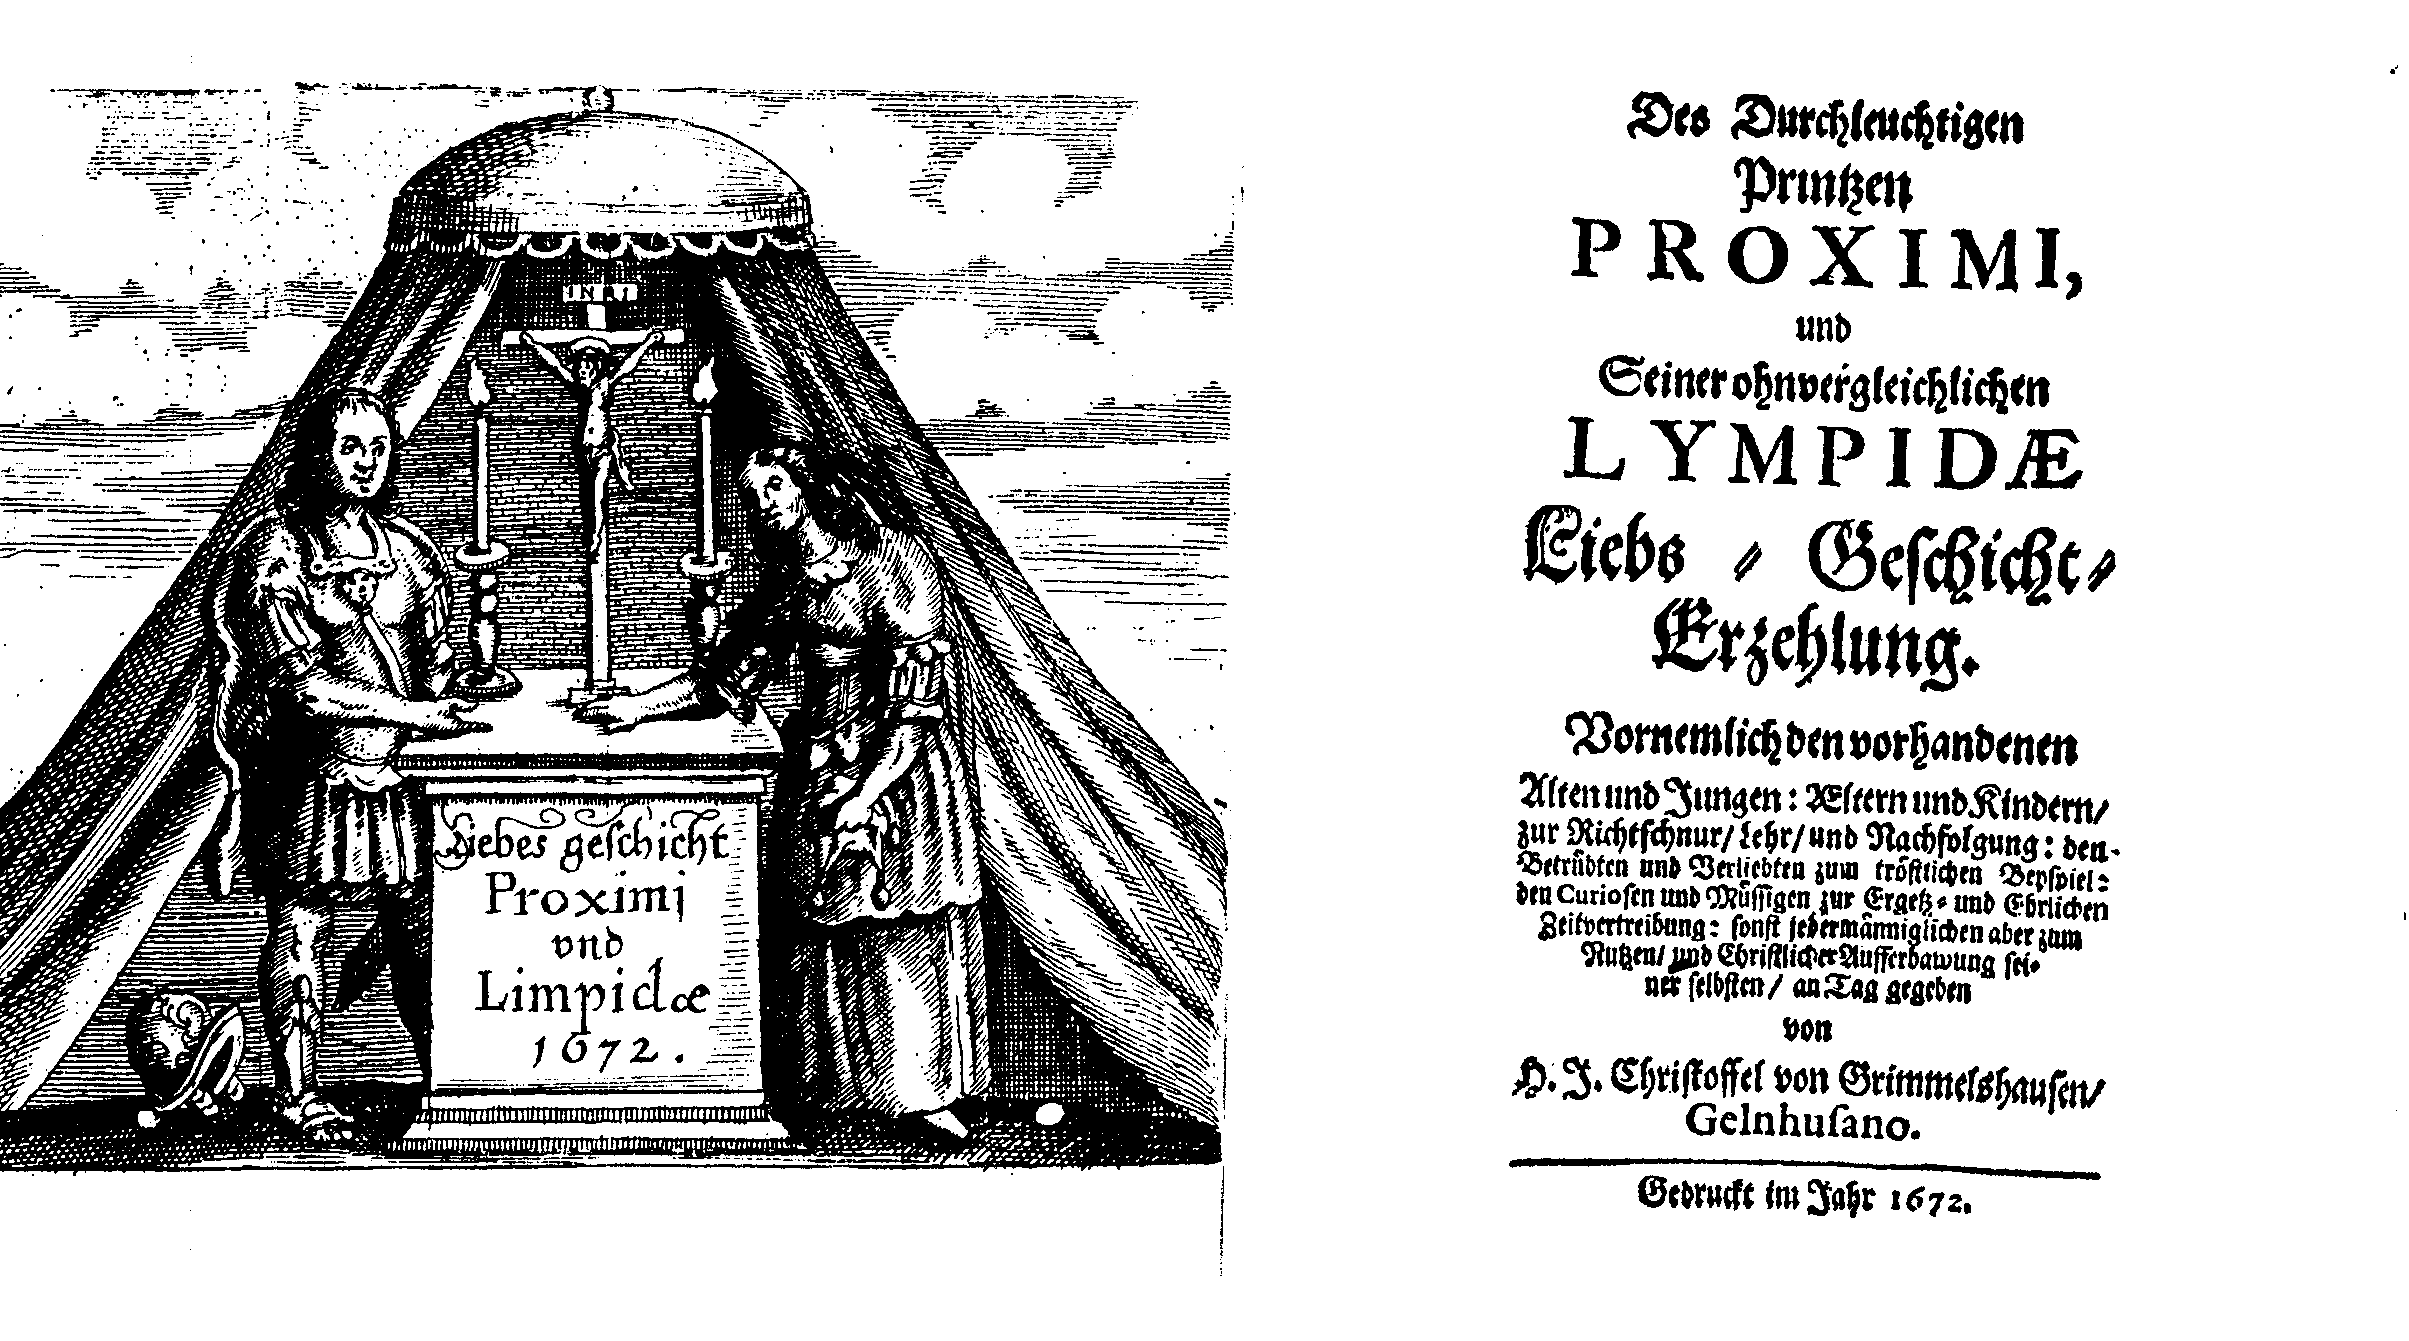 H. J. Christoffel von Grimmelshausen, Des Durchleuchtigen Printzen Proximi, und seiner ohnvergleichlichen Lympidæ Liebs-Geschicht-Erzehlung (1672).